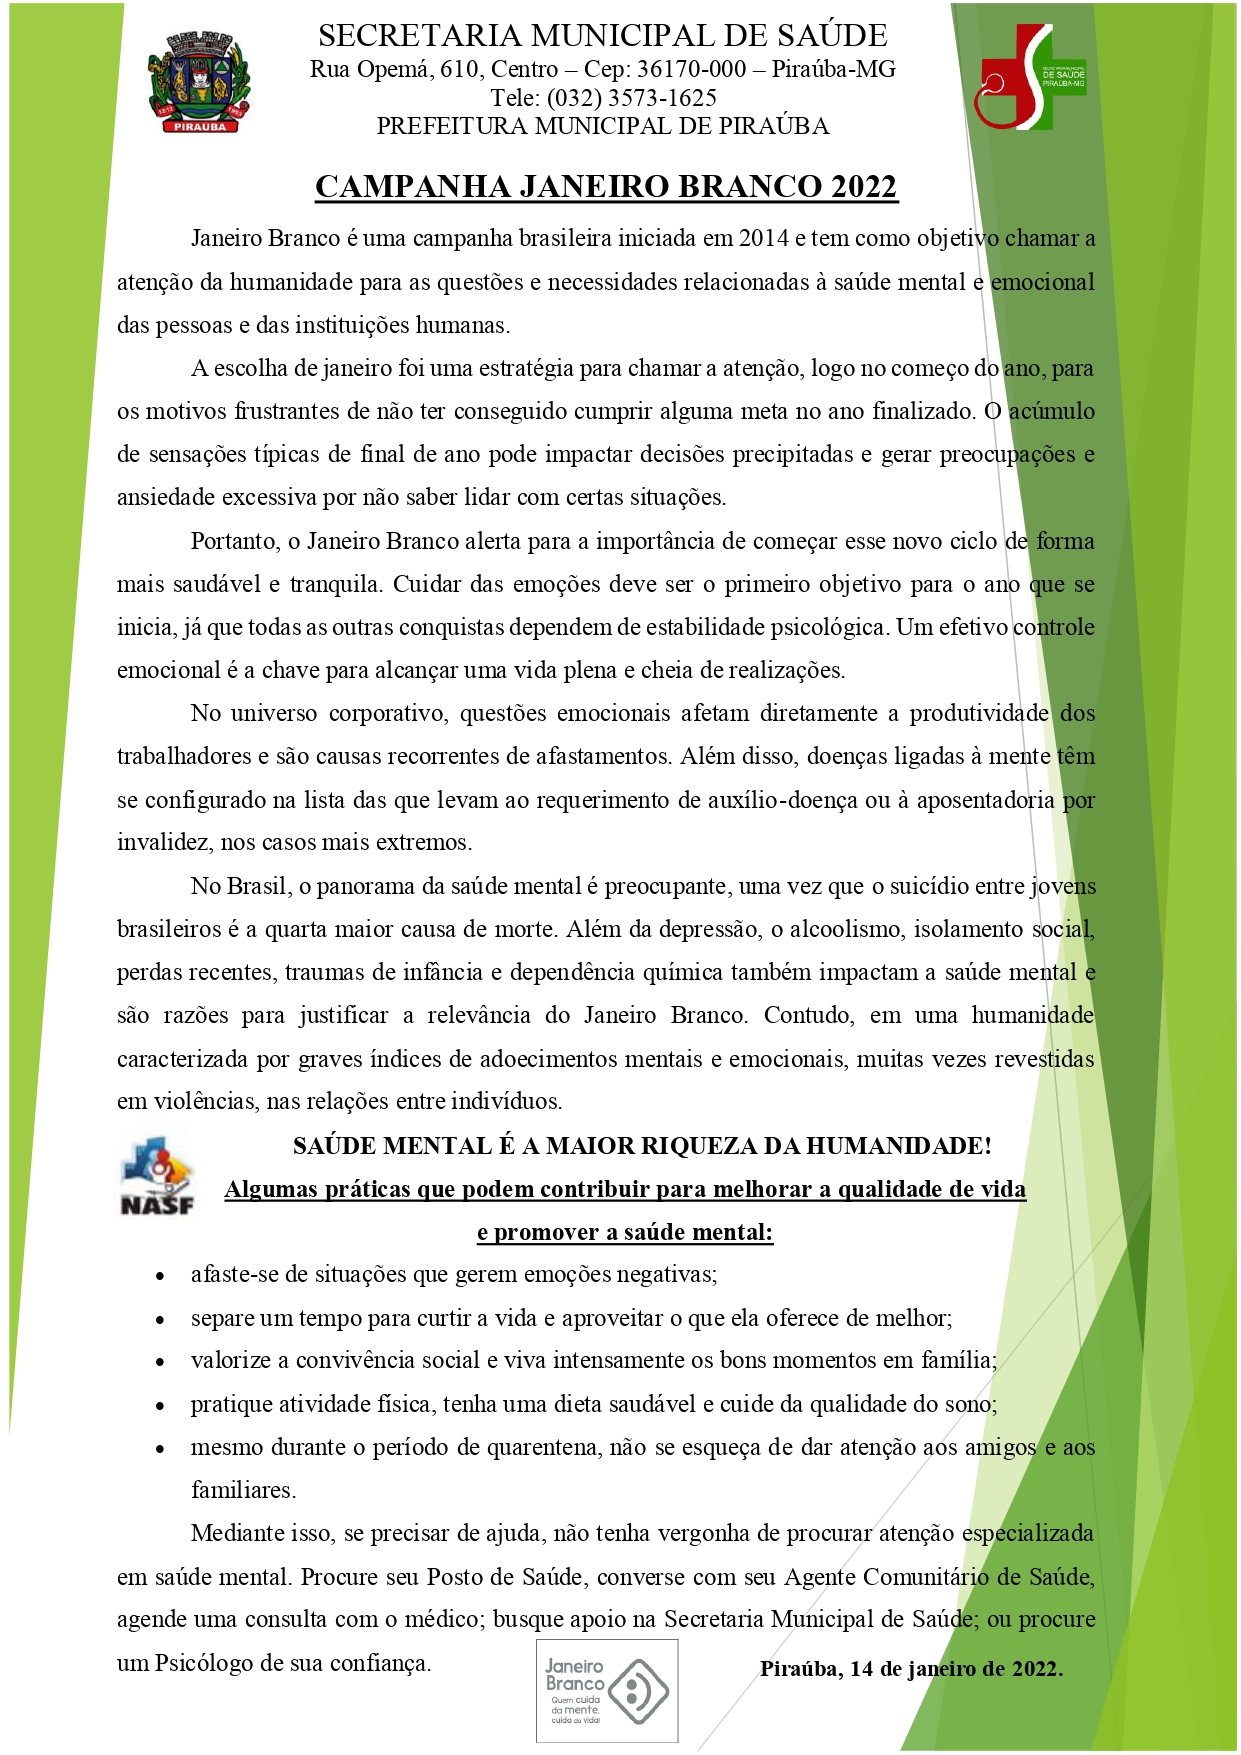 CAMPANHA JANEIRO BRANCO 2022 | SECRETARIA MUNICIPAL DE SAÚDE | PIRAÚBA | MG